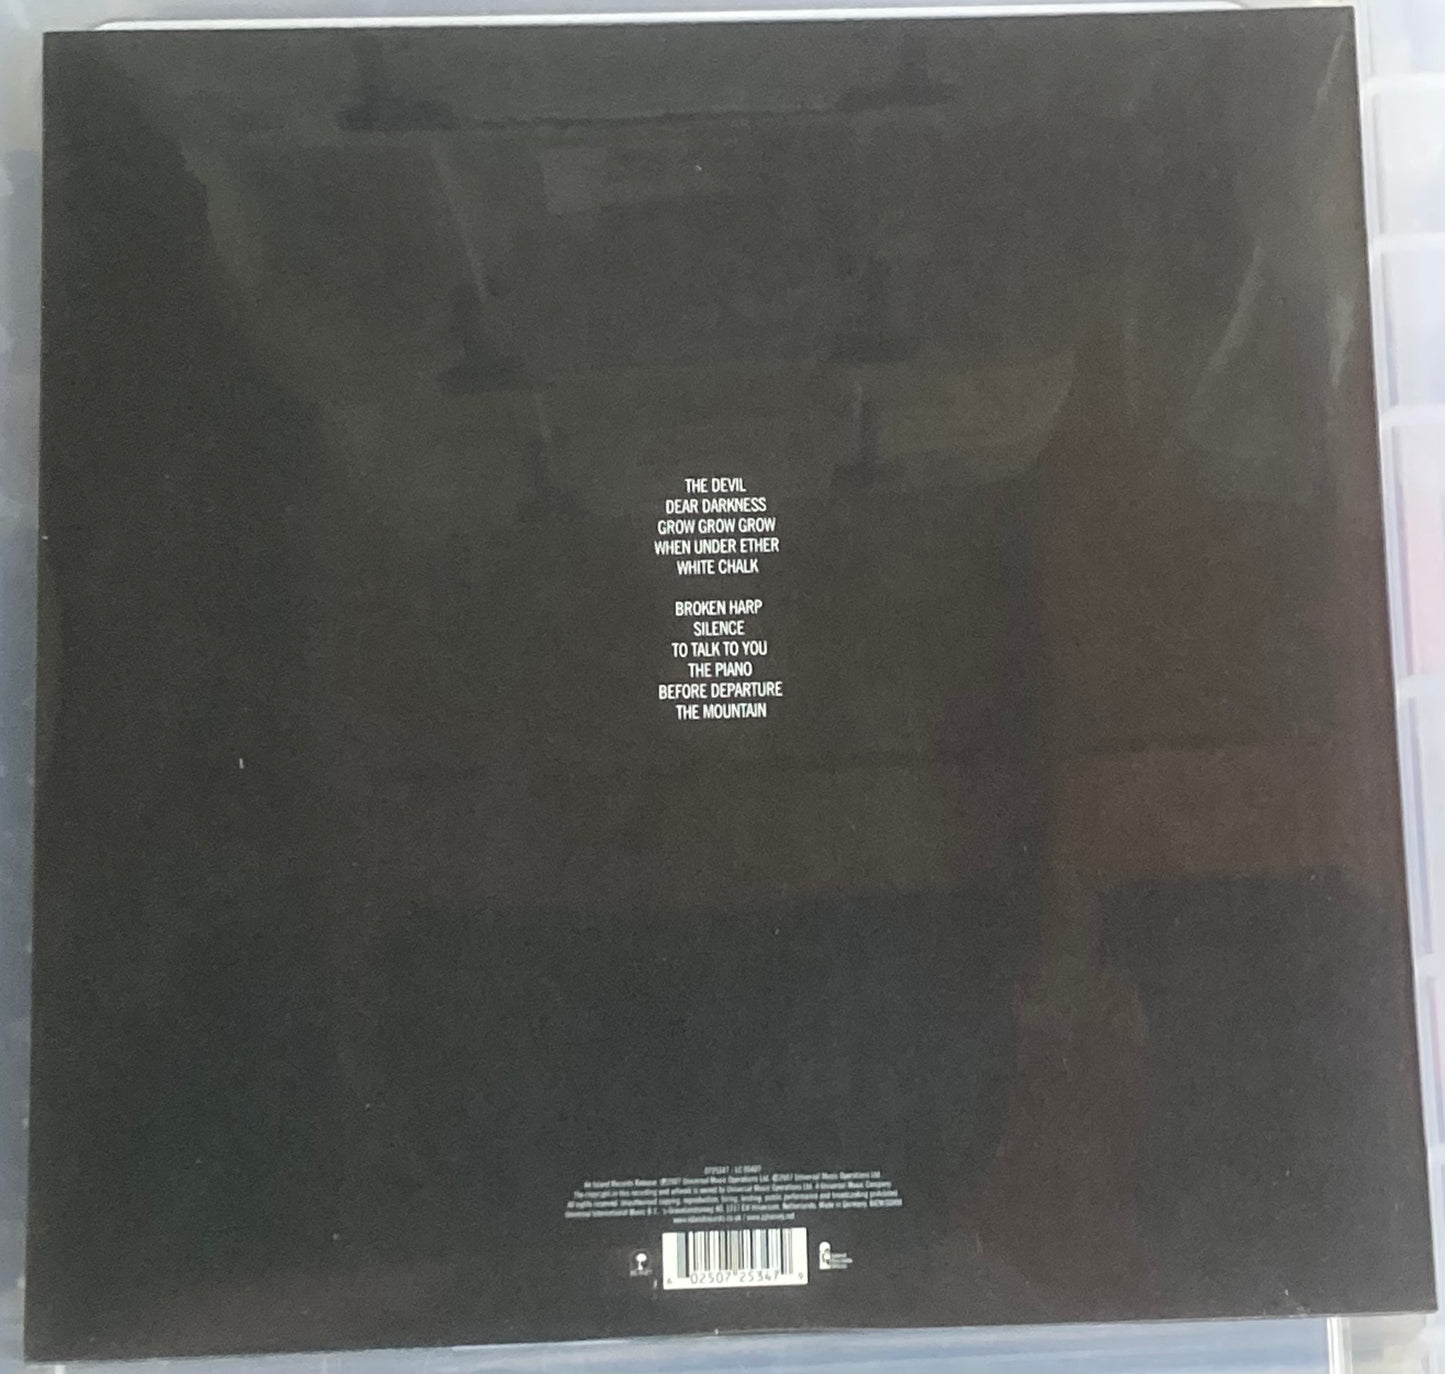 The back of 'PJ Harvey - White Chalk' on vinyl